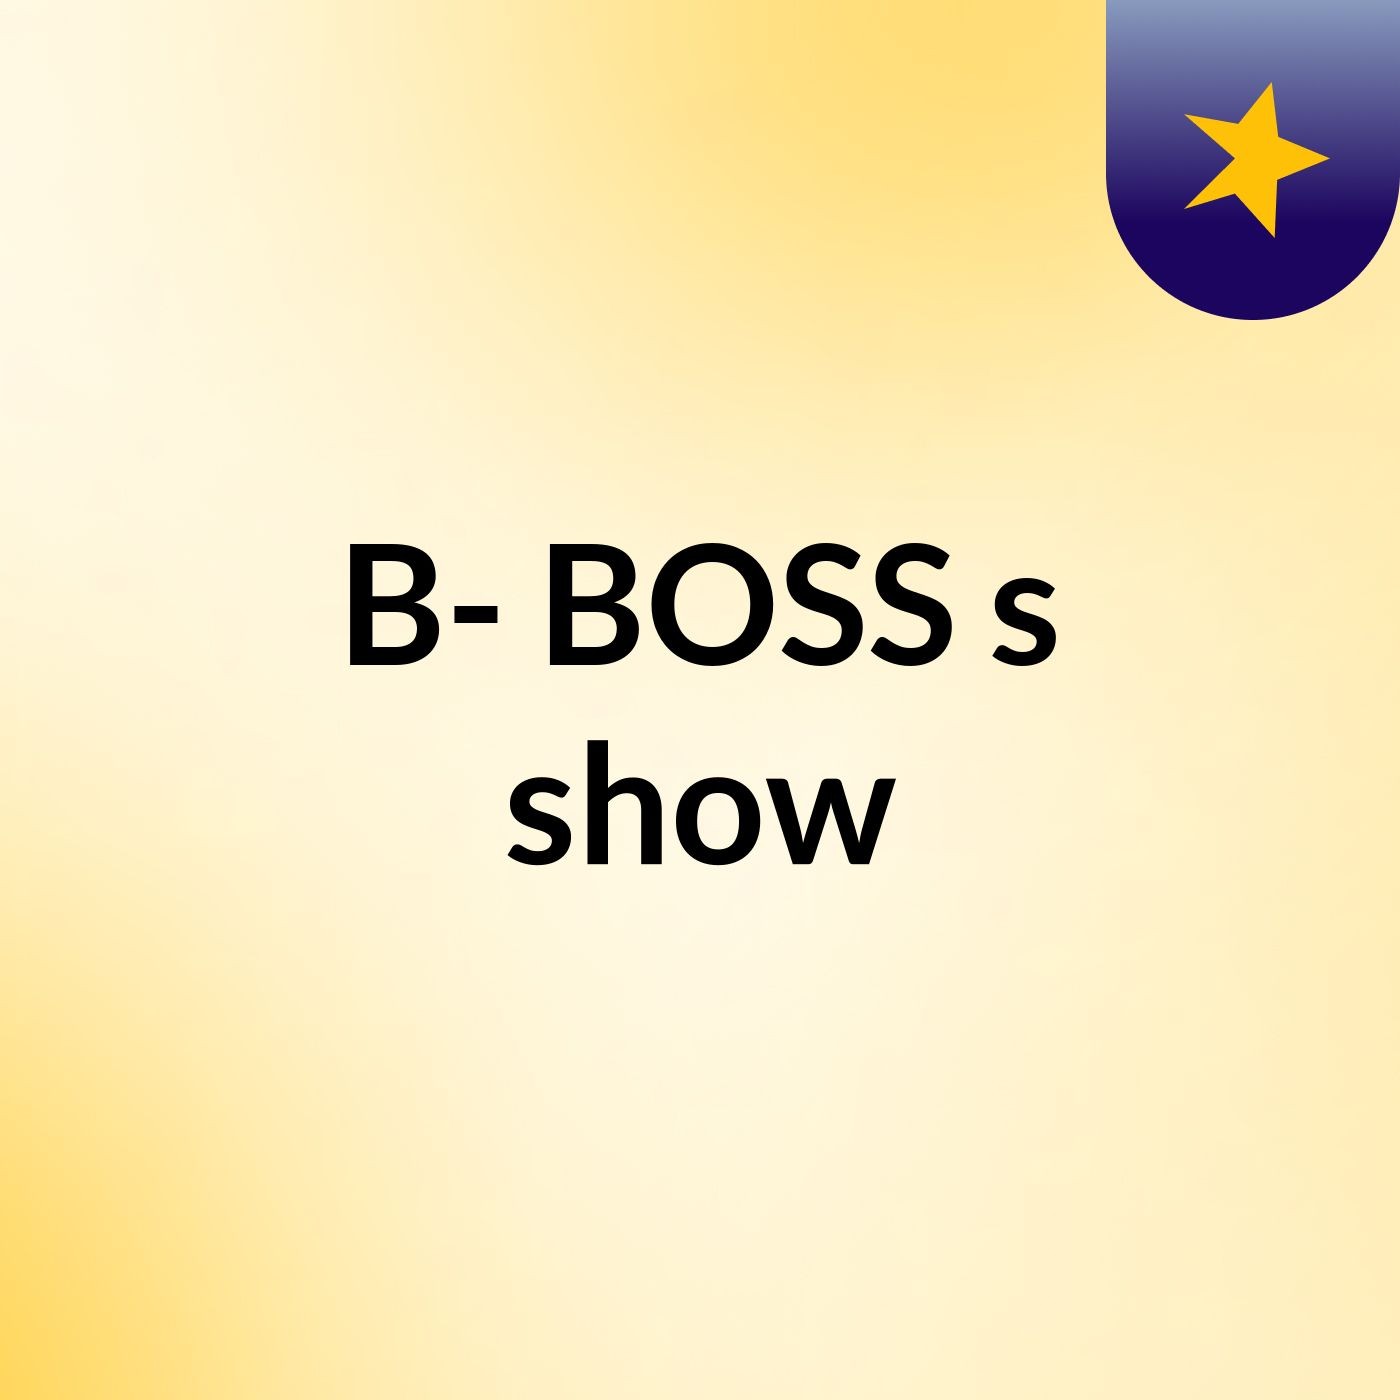 B- BOSS's show